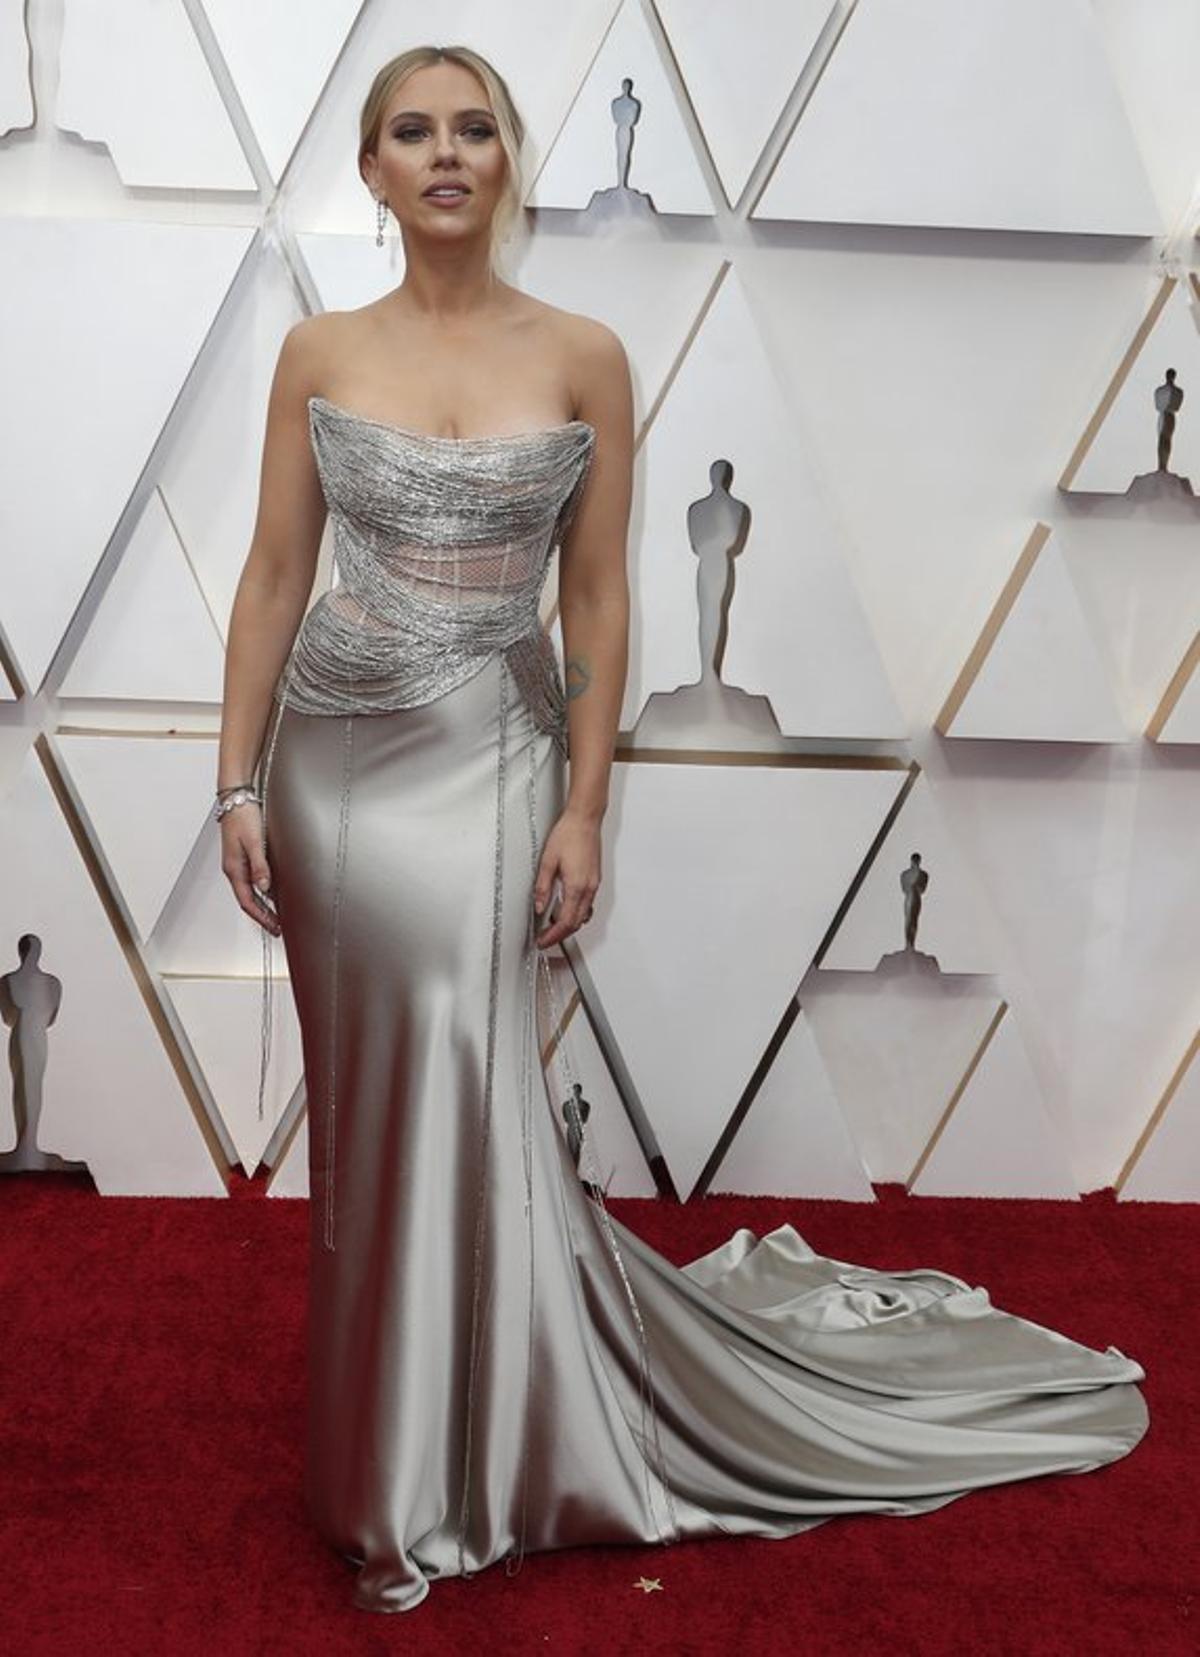 Scarlett Johansson, con un Oscar de la Renta en plata que llamó la atención por el magnífico trabajo en corsetería del corpiño, a modo de diosa griega.